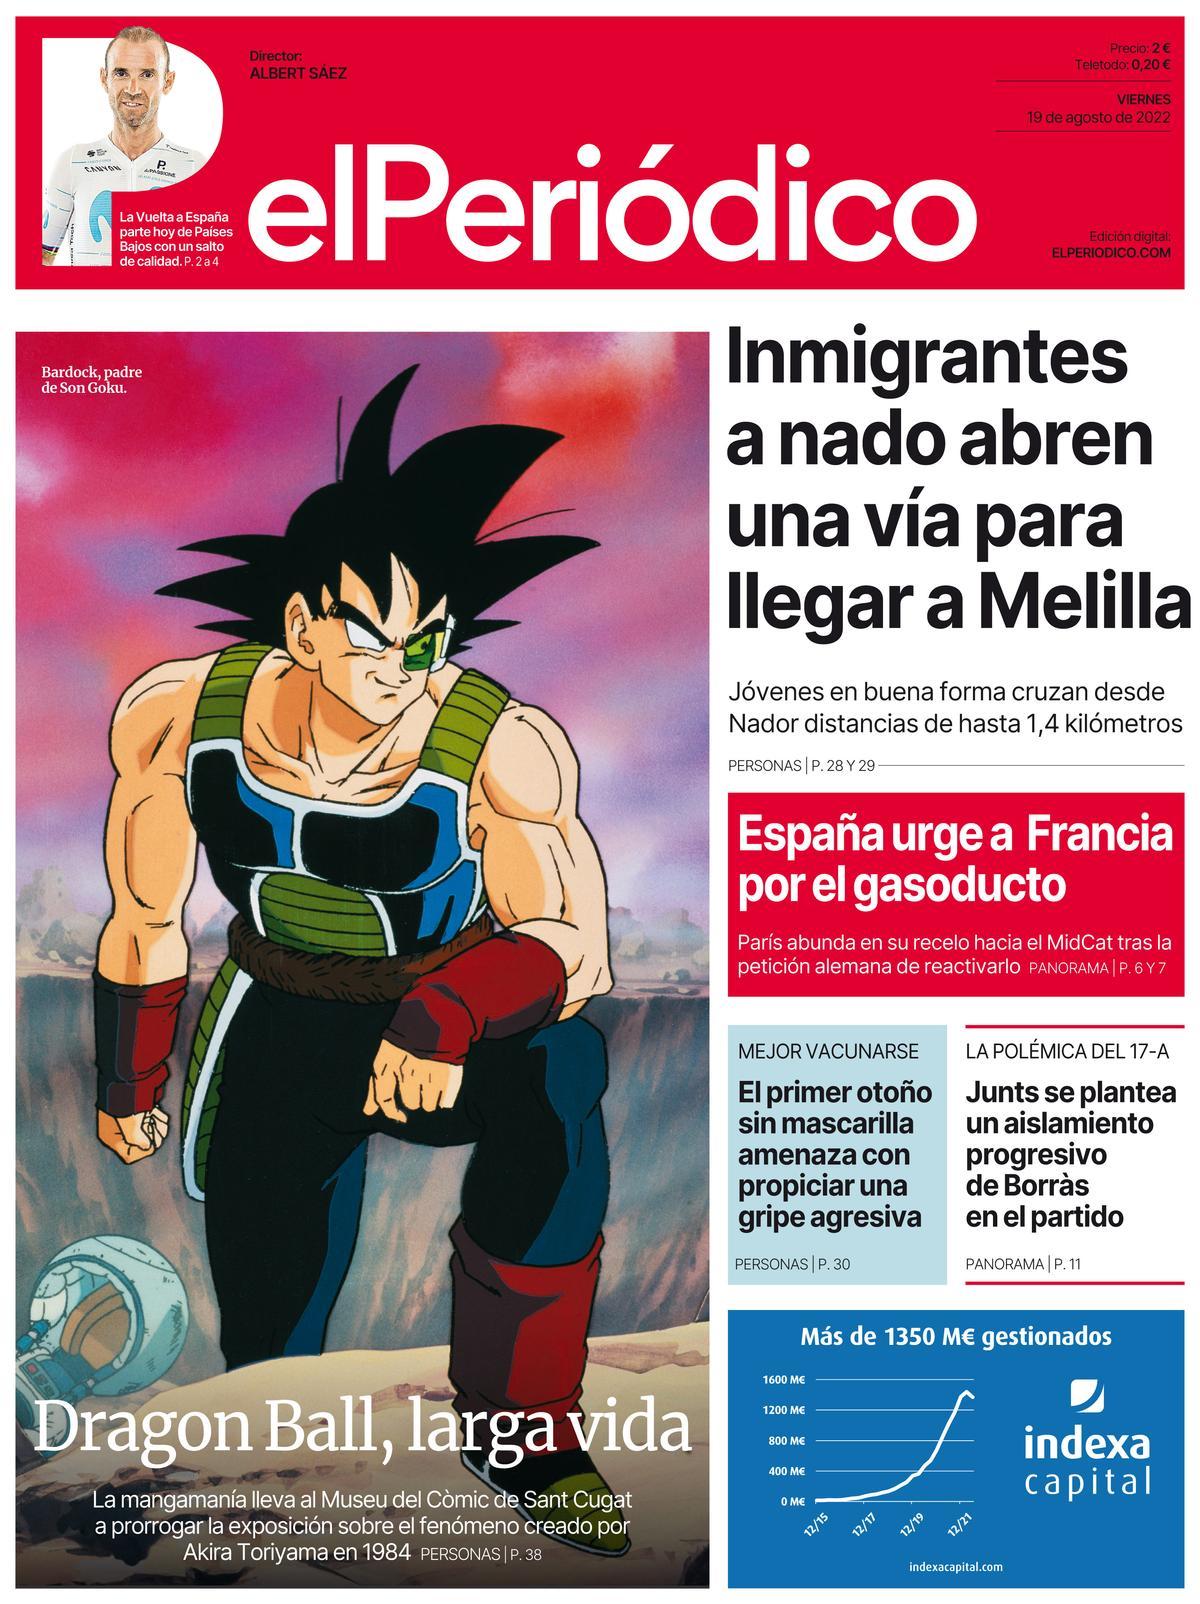 La portada de EL PERIÓDICO del 19 de agosto de 2022.